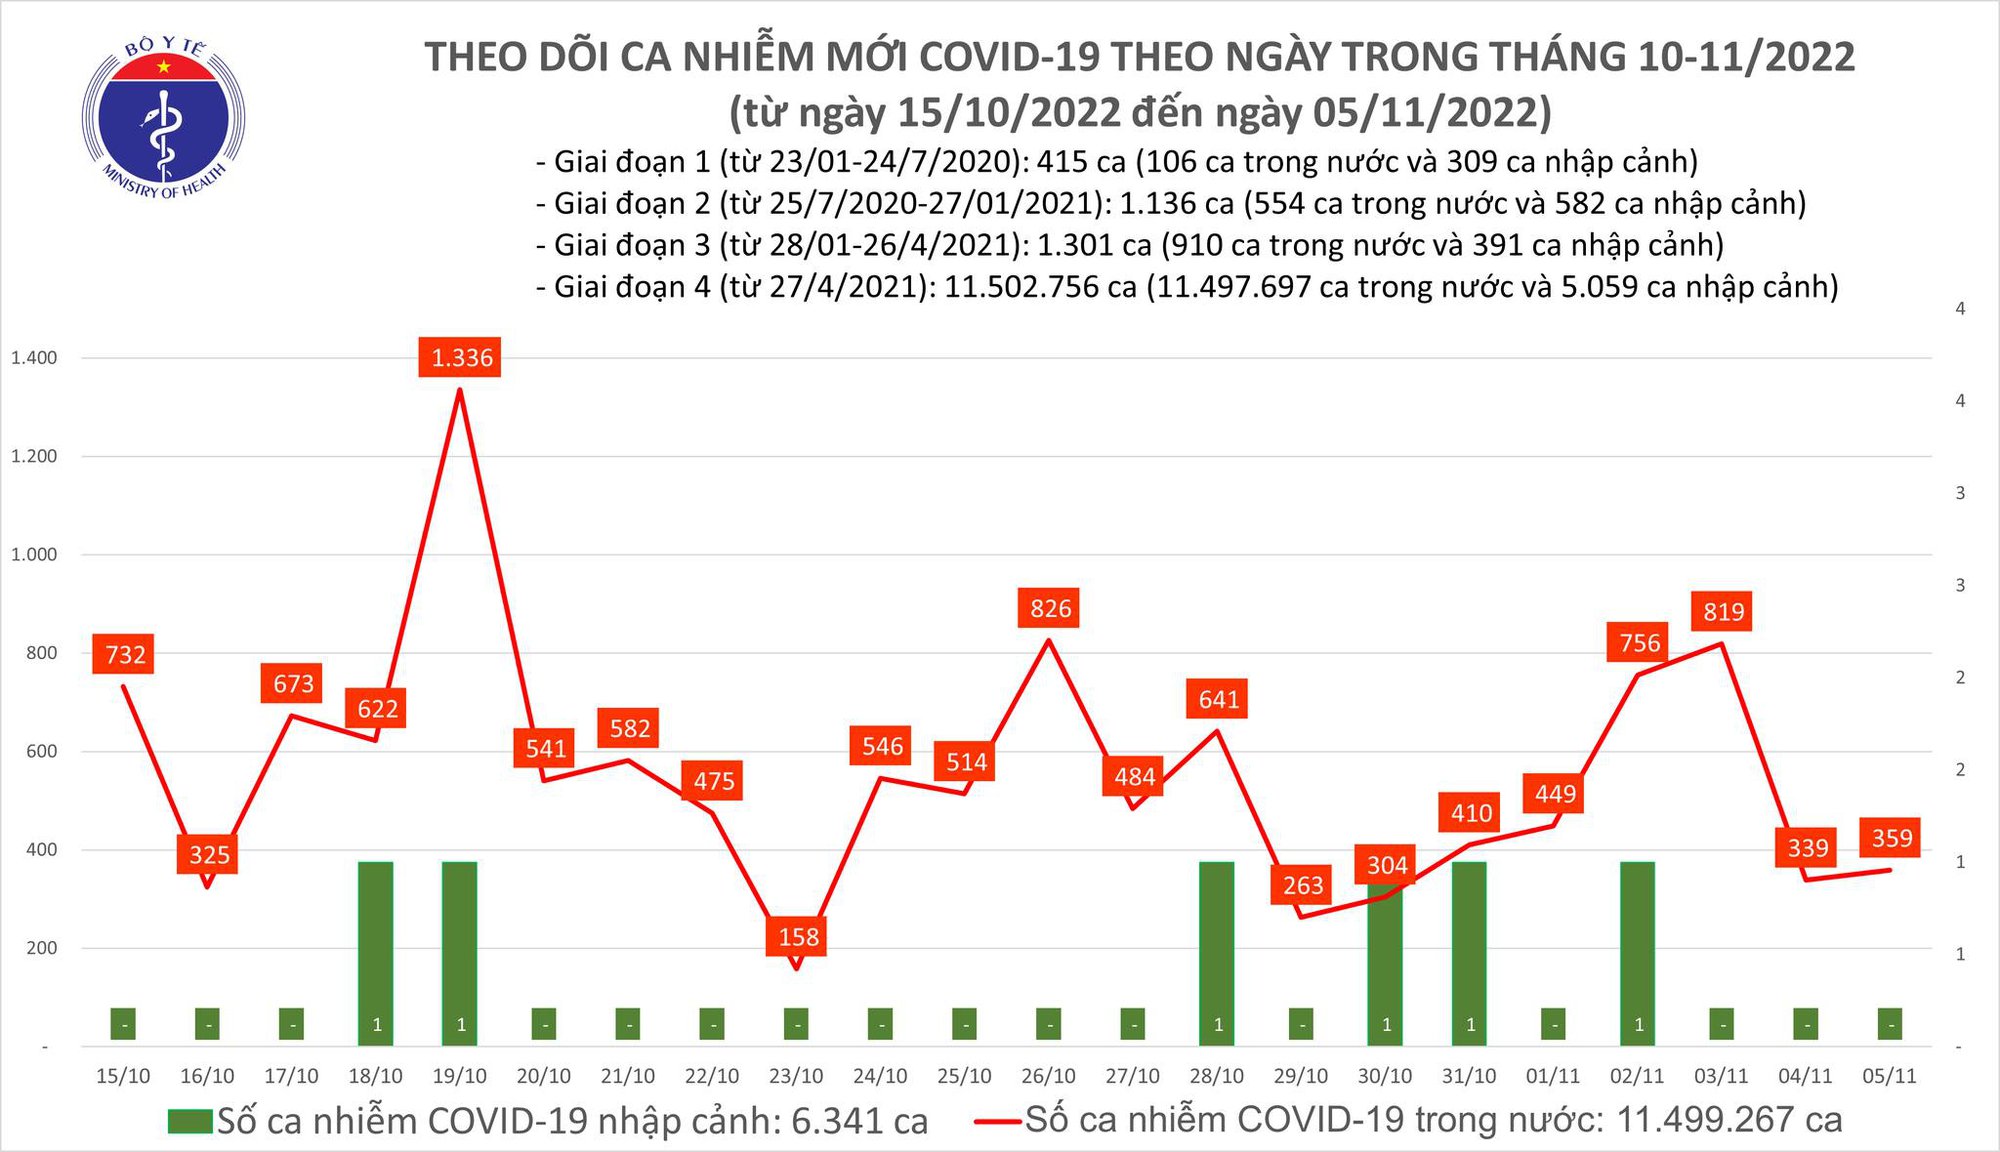 Covid-19 ngày 5/11: Chỉ ghi nhận hơn 300 ca mắc mới - Ảnh 1.